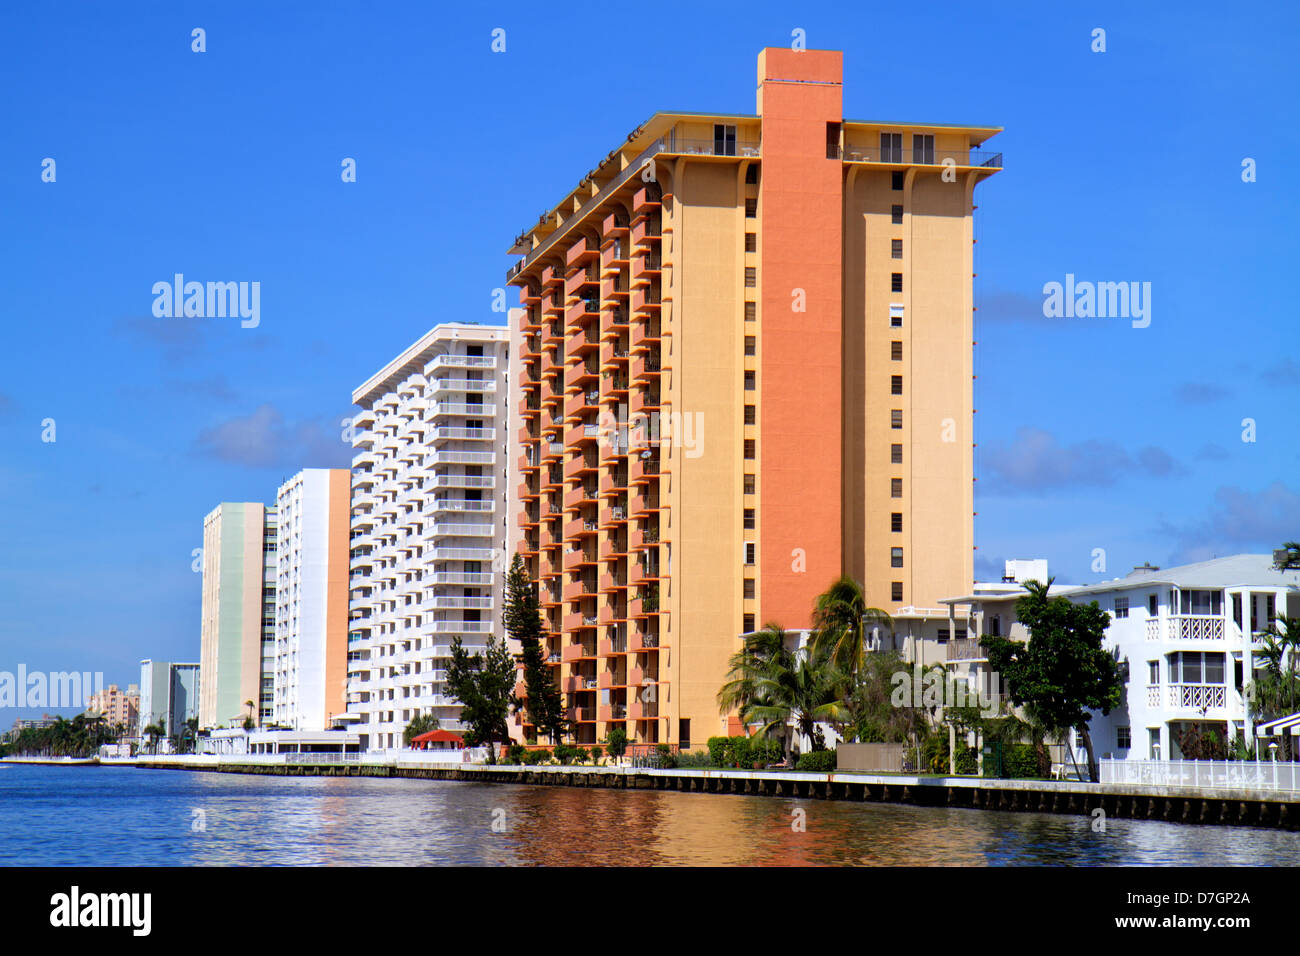 Hollywood Florida, Intracoastal Hochhaus Wolkenkratzer Gebäude Gebäude Eigentumswohnung Wohnapartment Wohnungen Gehäuse, City Skyline, S Stockfoto